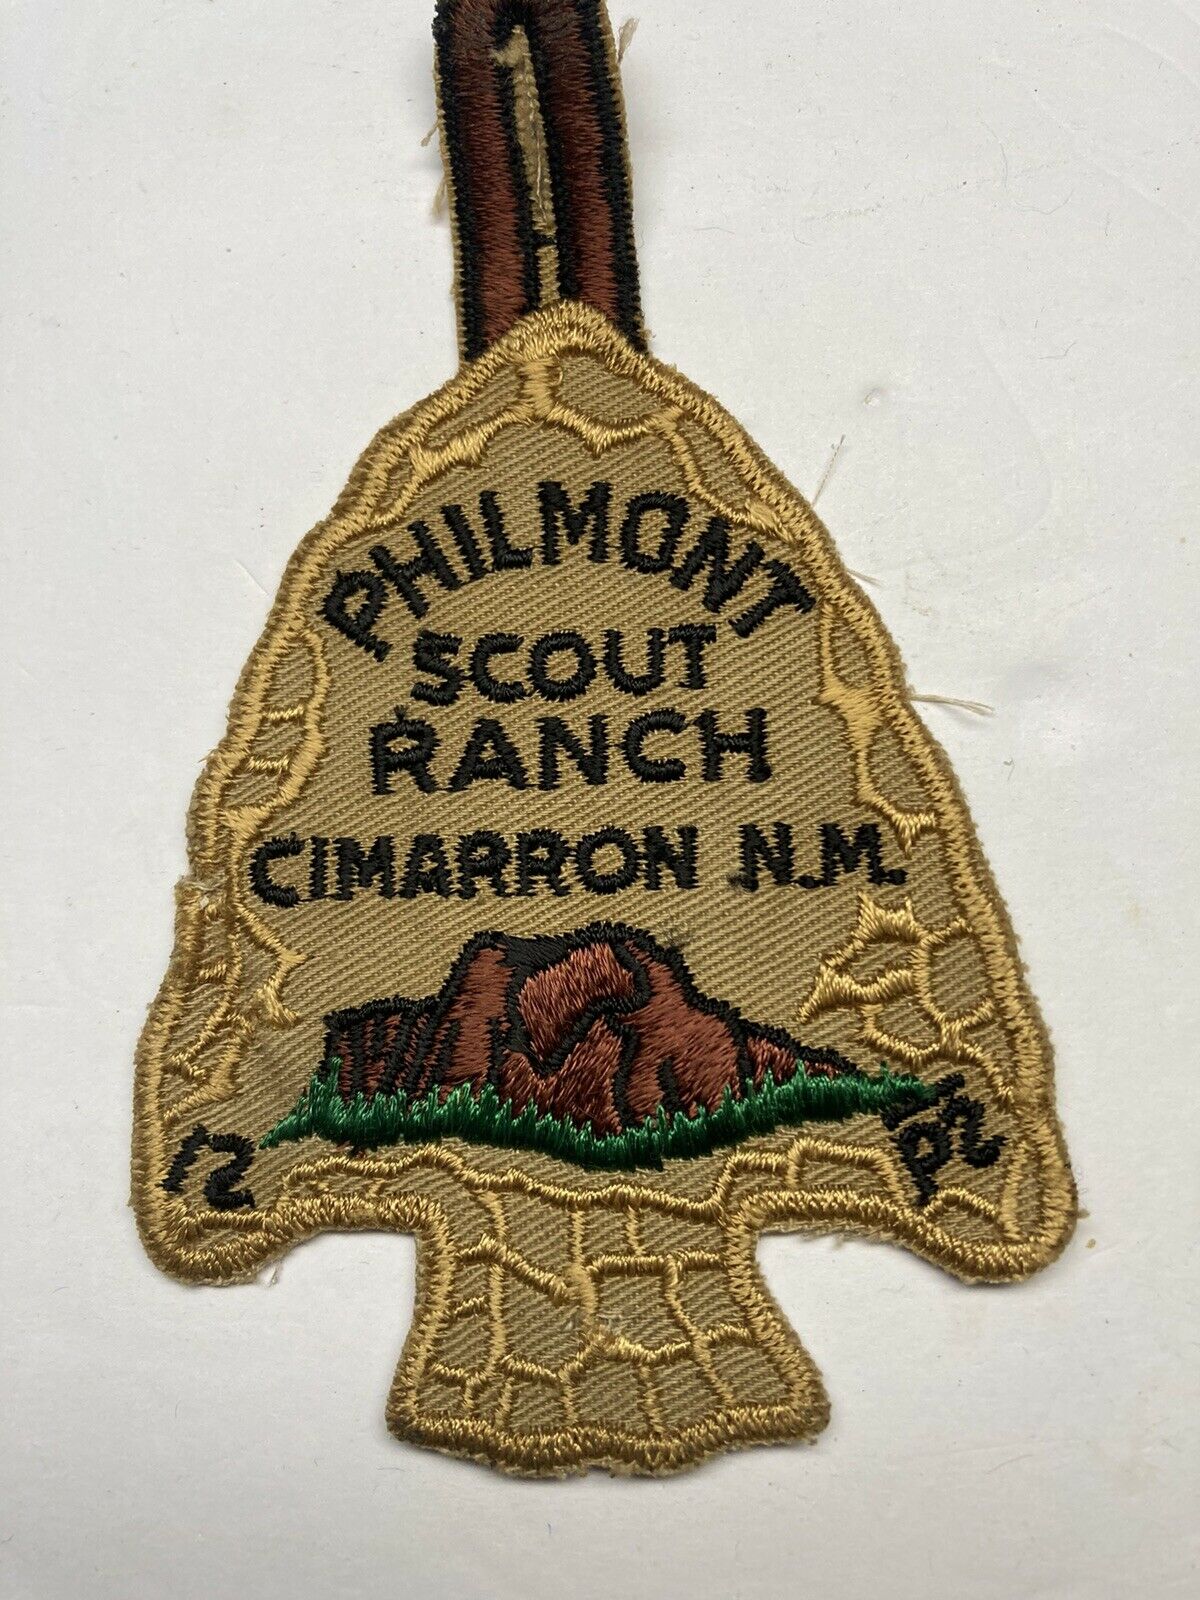 Older Philmont Arrowhead Bsa Patch Boy Scout.